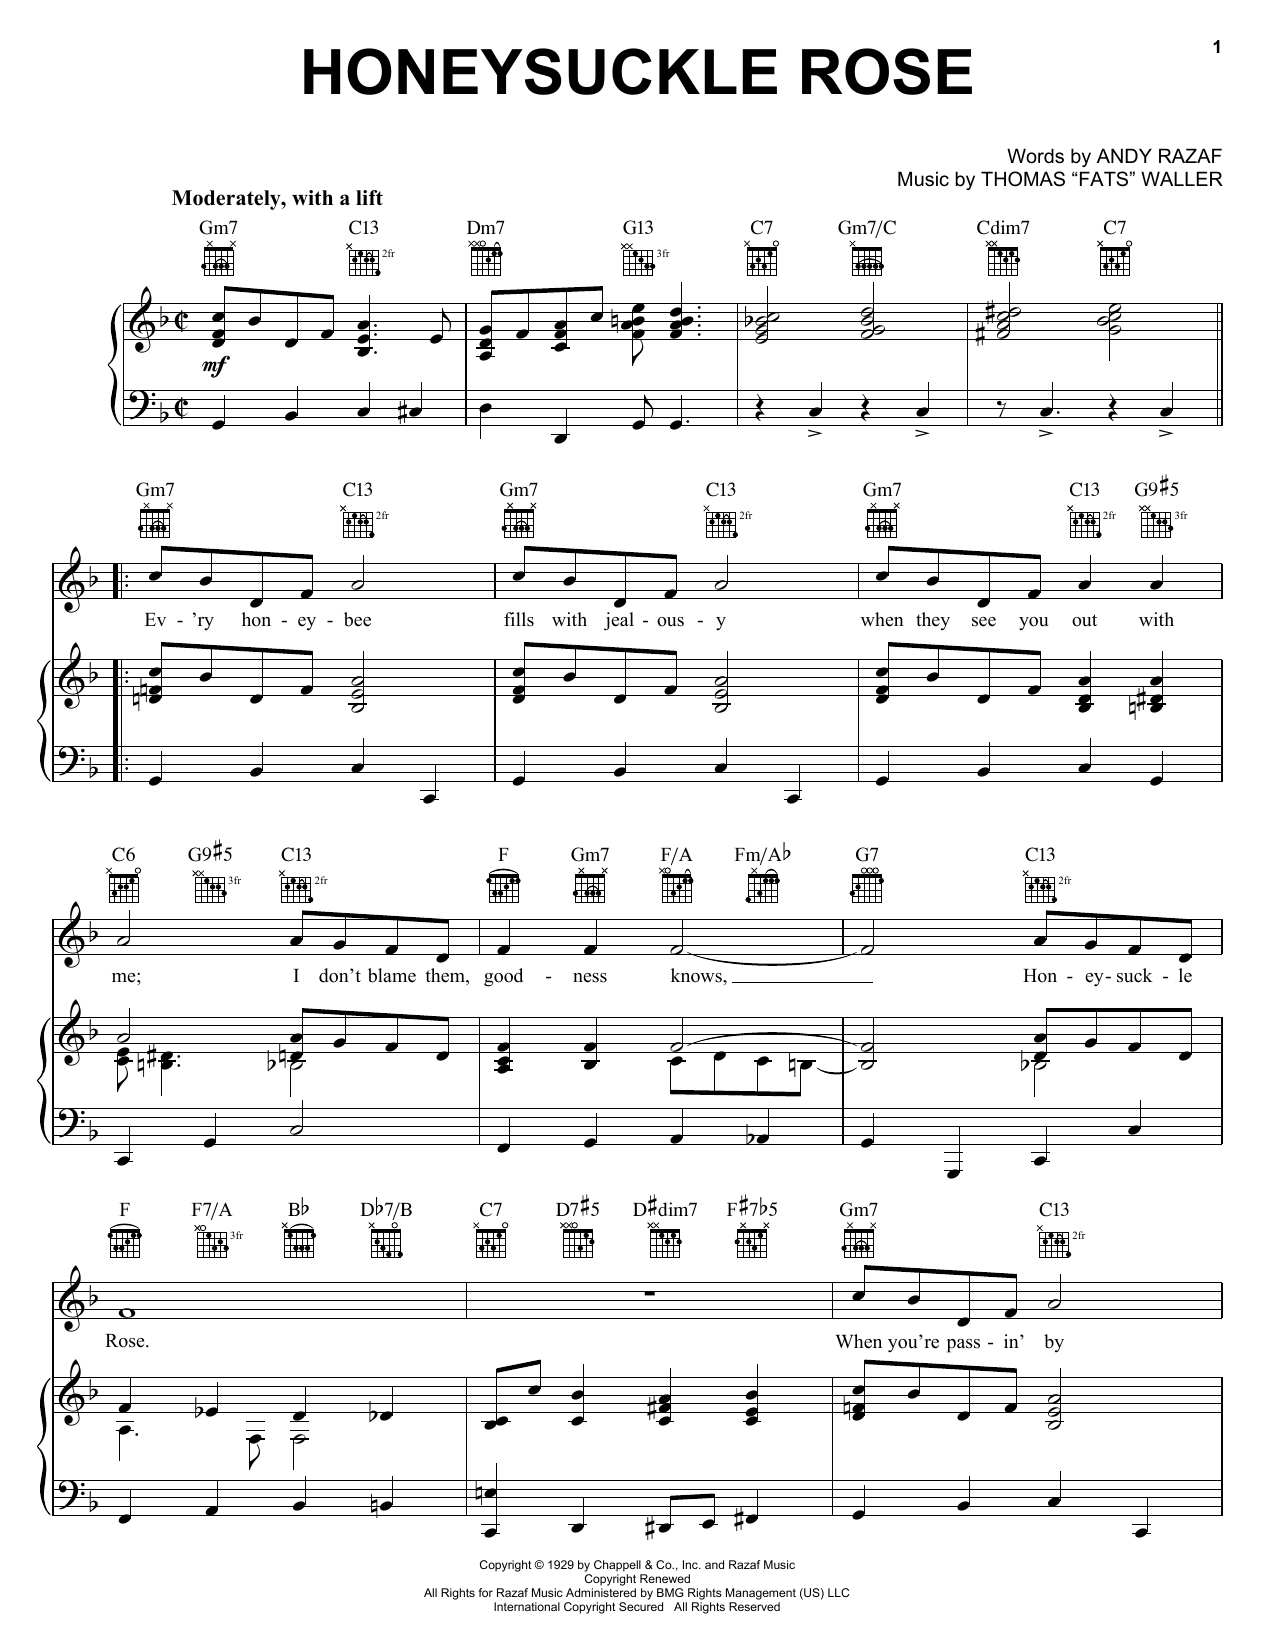 Django Reinhardt Honeysuckle Rose Sheet Music Notes & Chords for Ukulele - Download or Print PDF